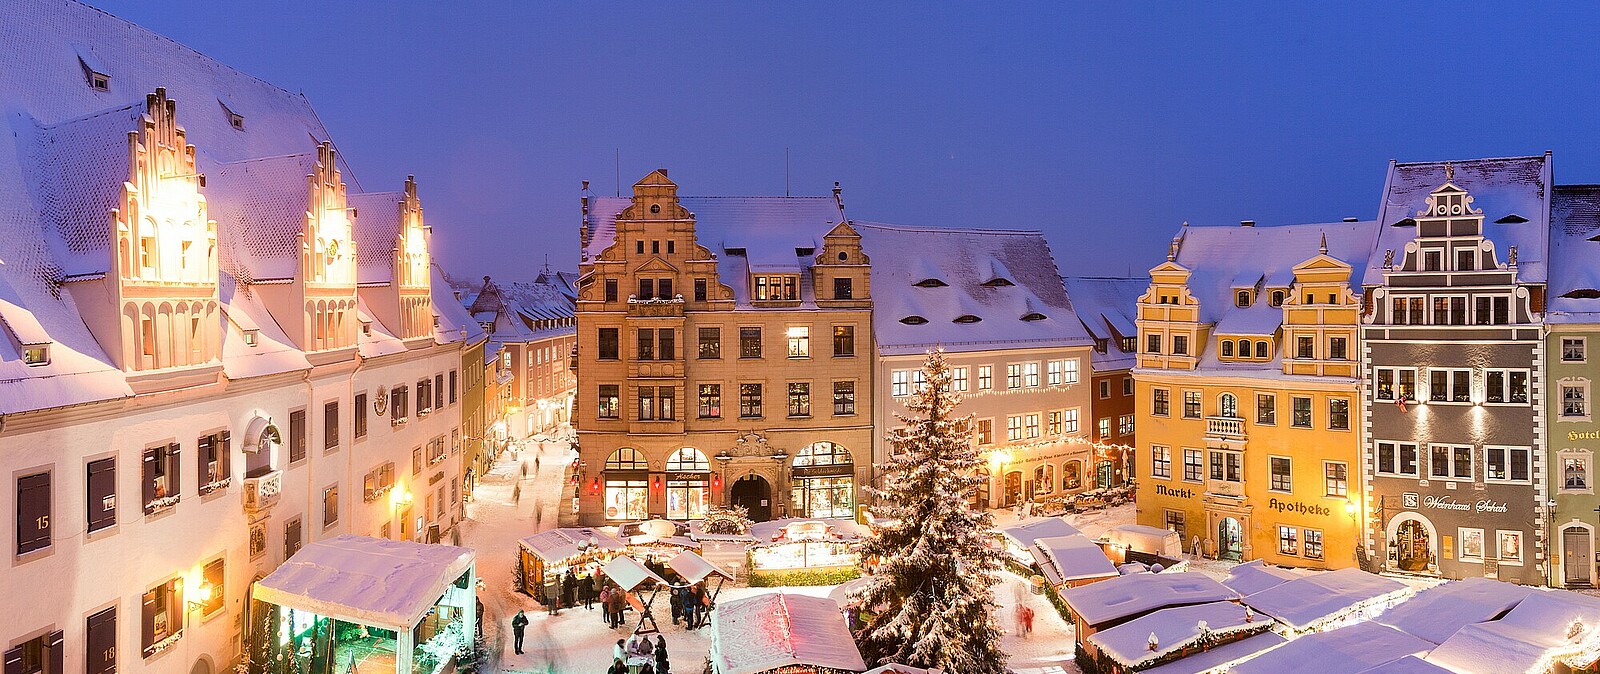 Altstadt von Meißen mit Weihnachtsmarkt und Orgelklängen aus dem Meißner Dom